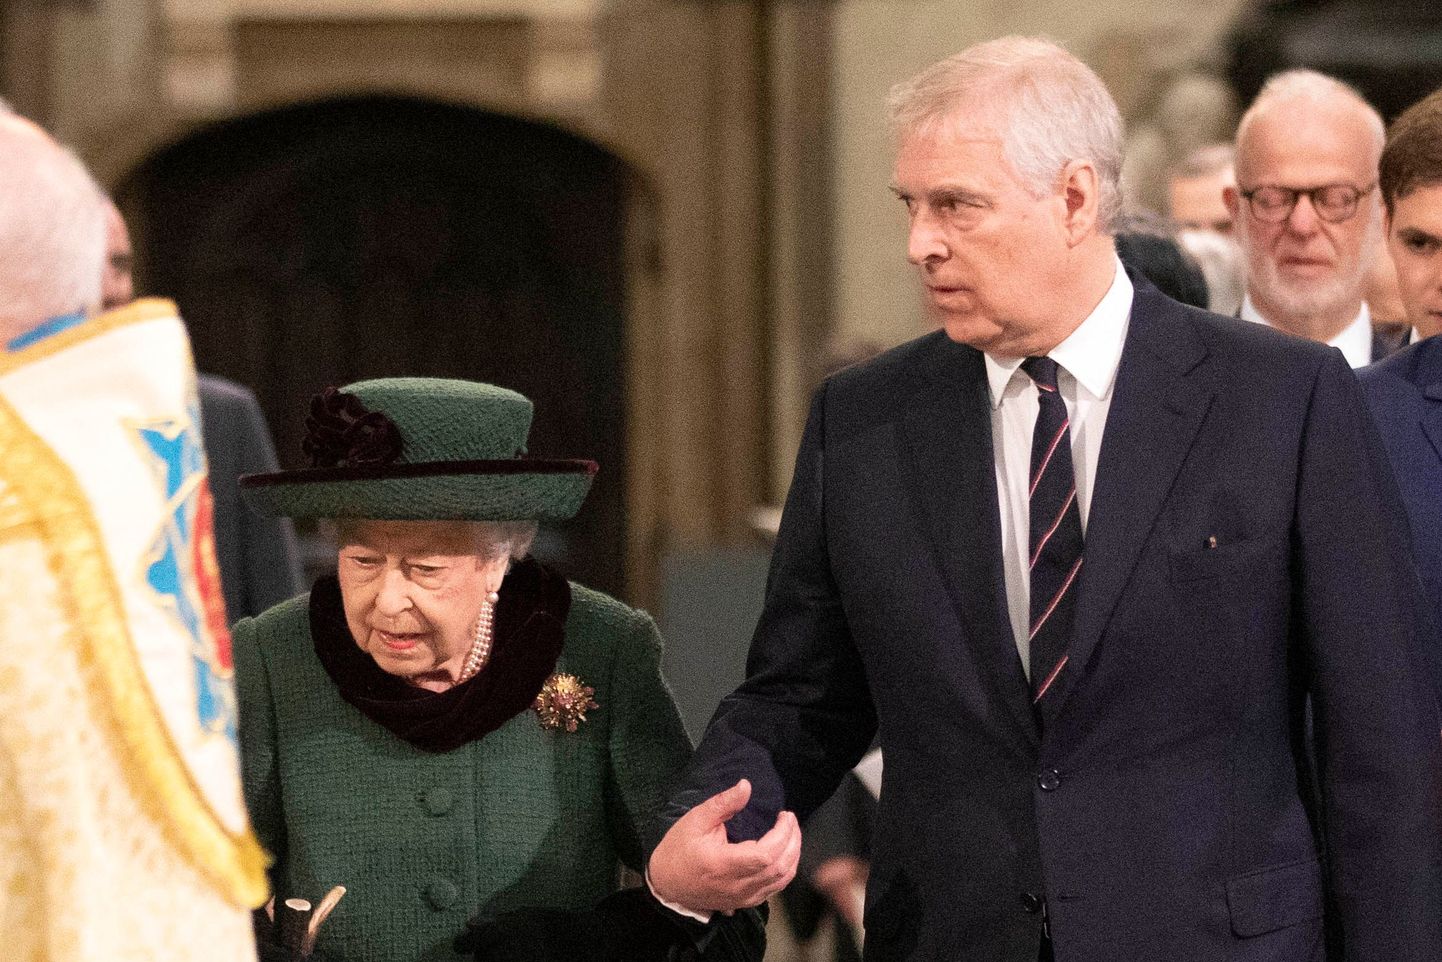 Prints Andrew saatis oma ema kuninganna Elizabeth II-st 29. märtsil 2022 Londonis Westminster Abbey katedraalis toimunud mälestusteenitusel kohale. Mälestati kuninganna abikaasat prints Philipit, kes suri 17. aprillil 2021